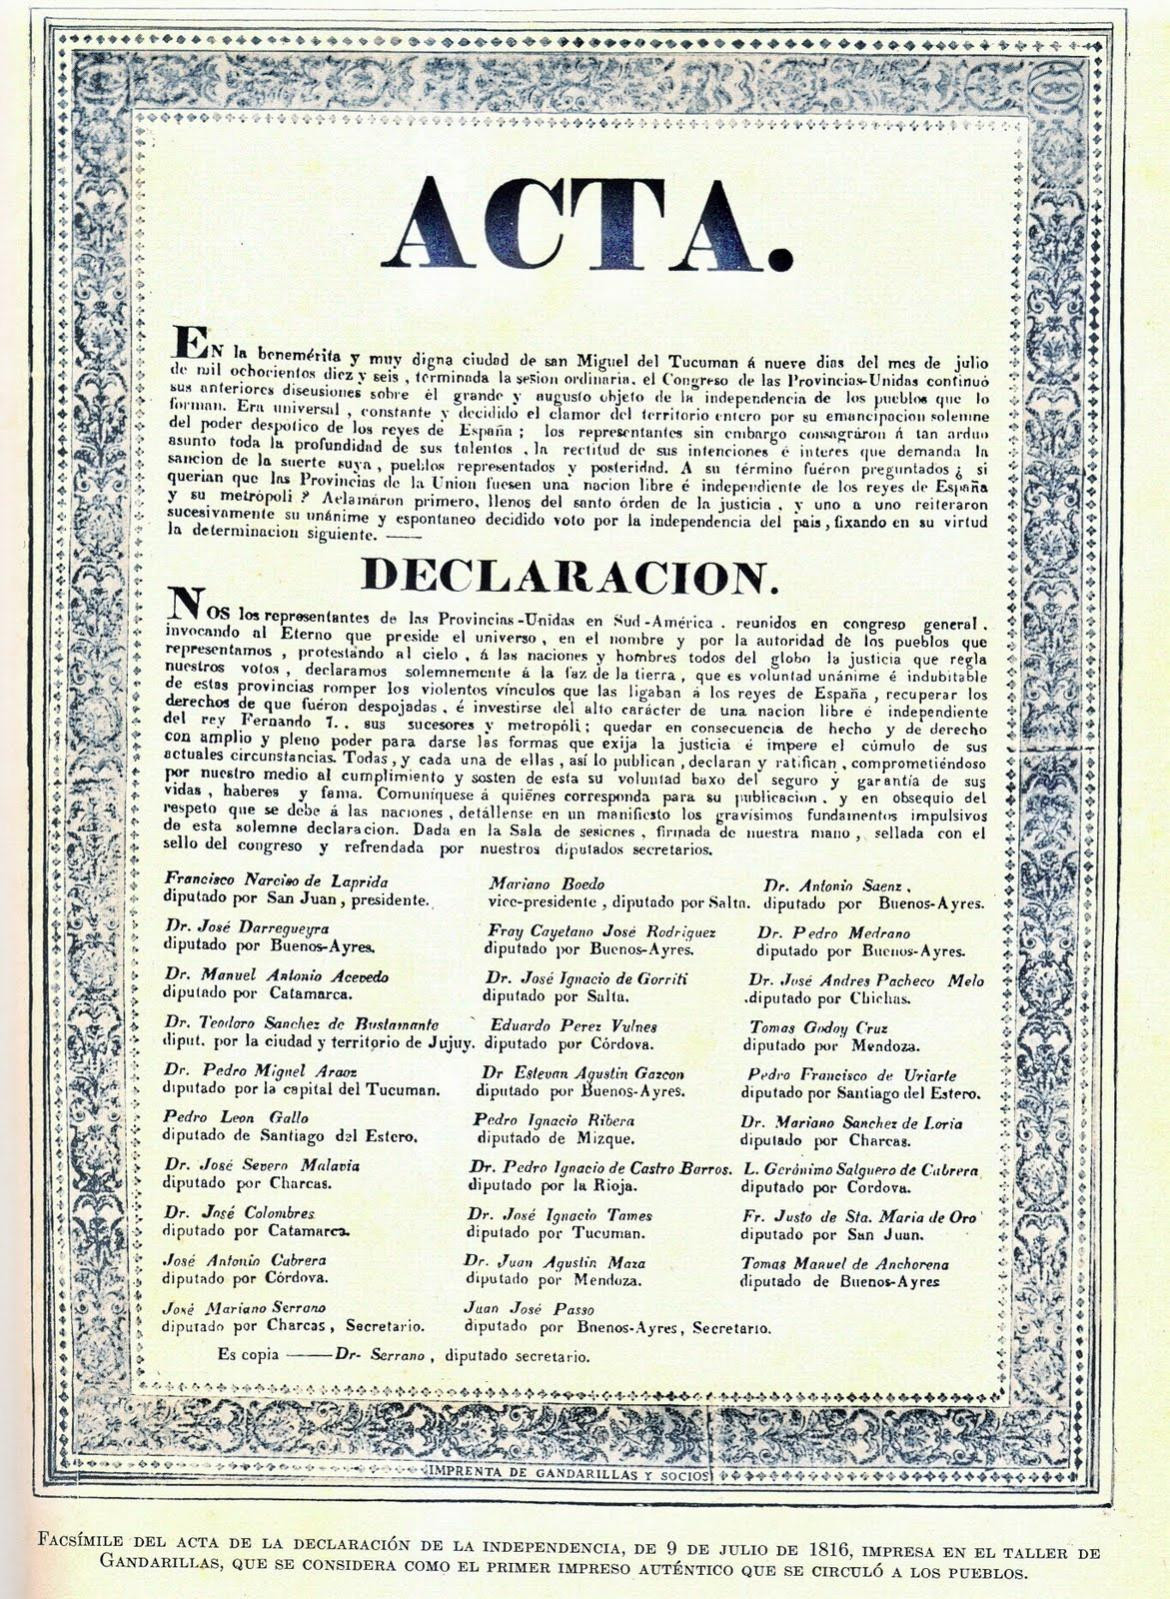 Acta de la independencia argentina, 9 de julio